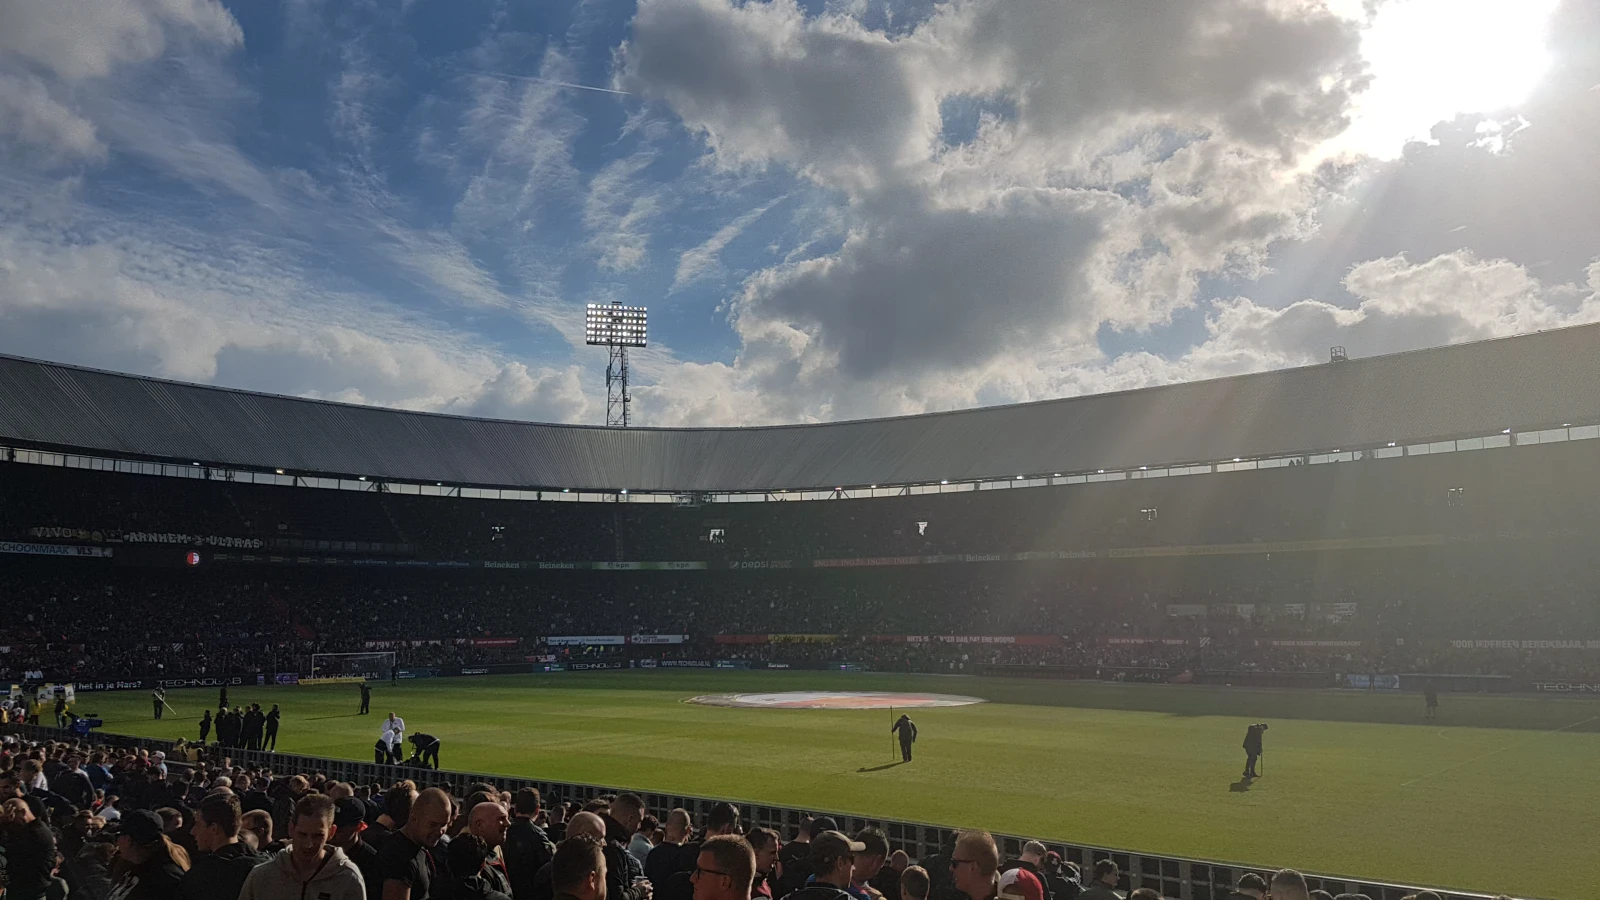 Nog één keer naar Feyenoord: laatste wens ernstig zieke Feyenoord-supporter vervuld